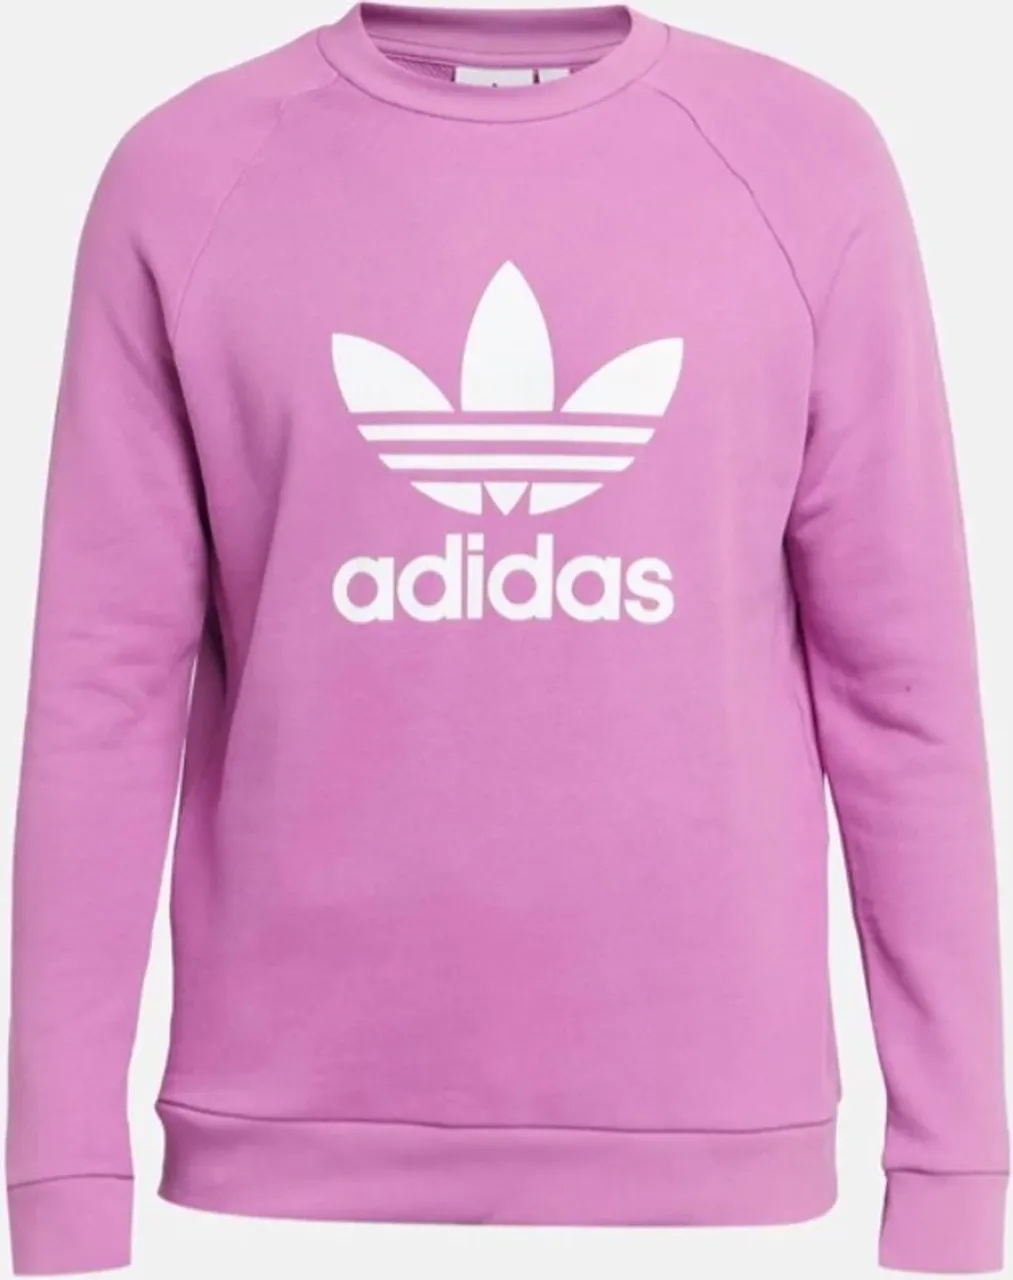 Adidas Originals Crew Sweater